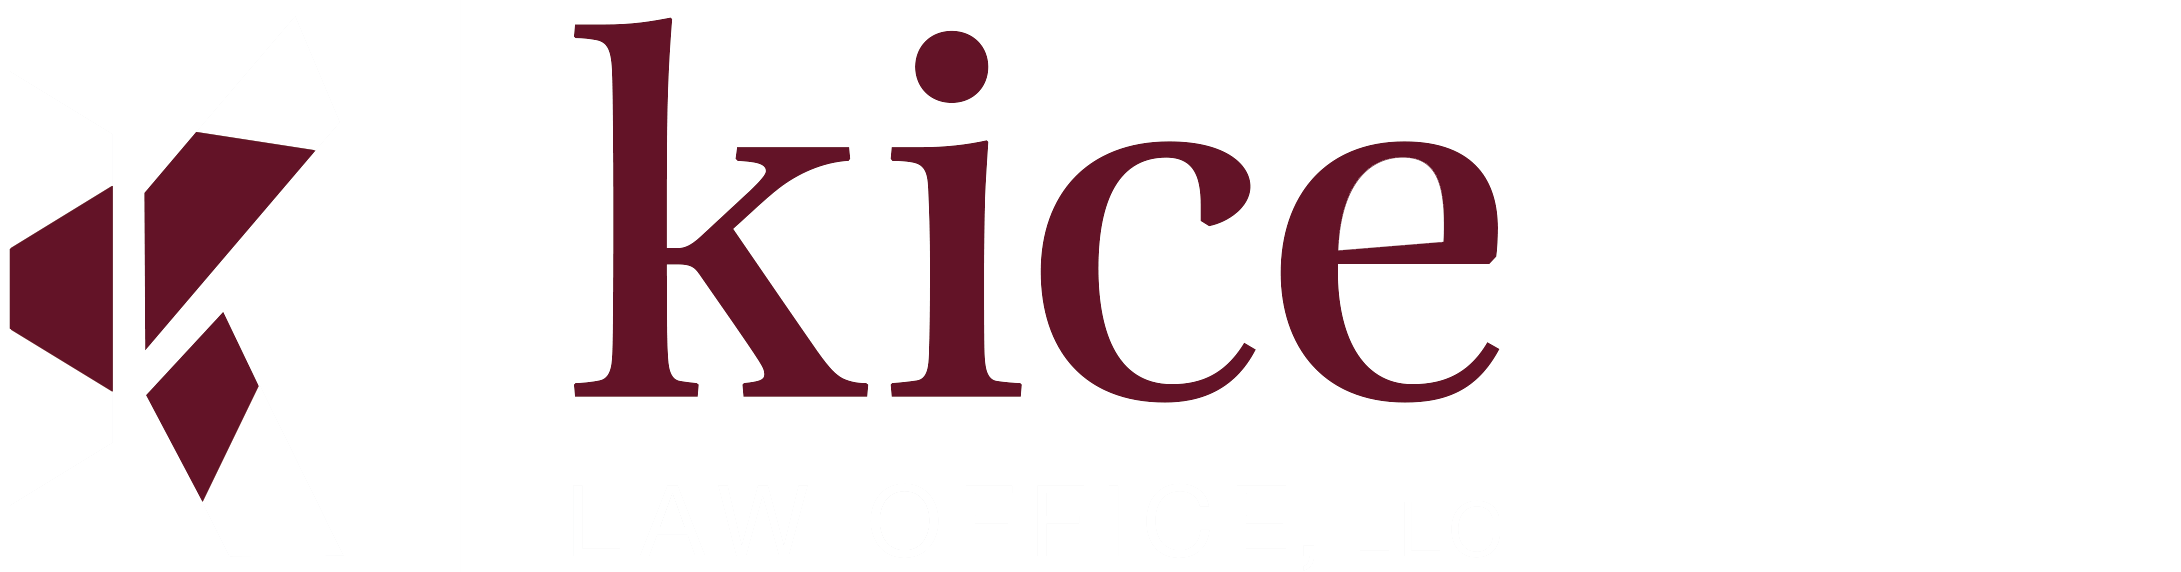 Kice Law Office